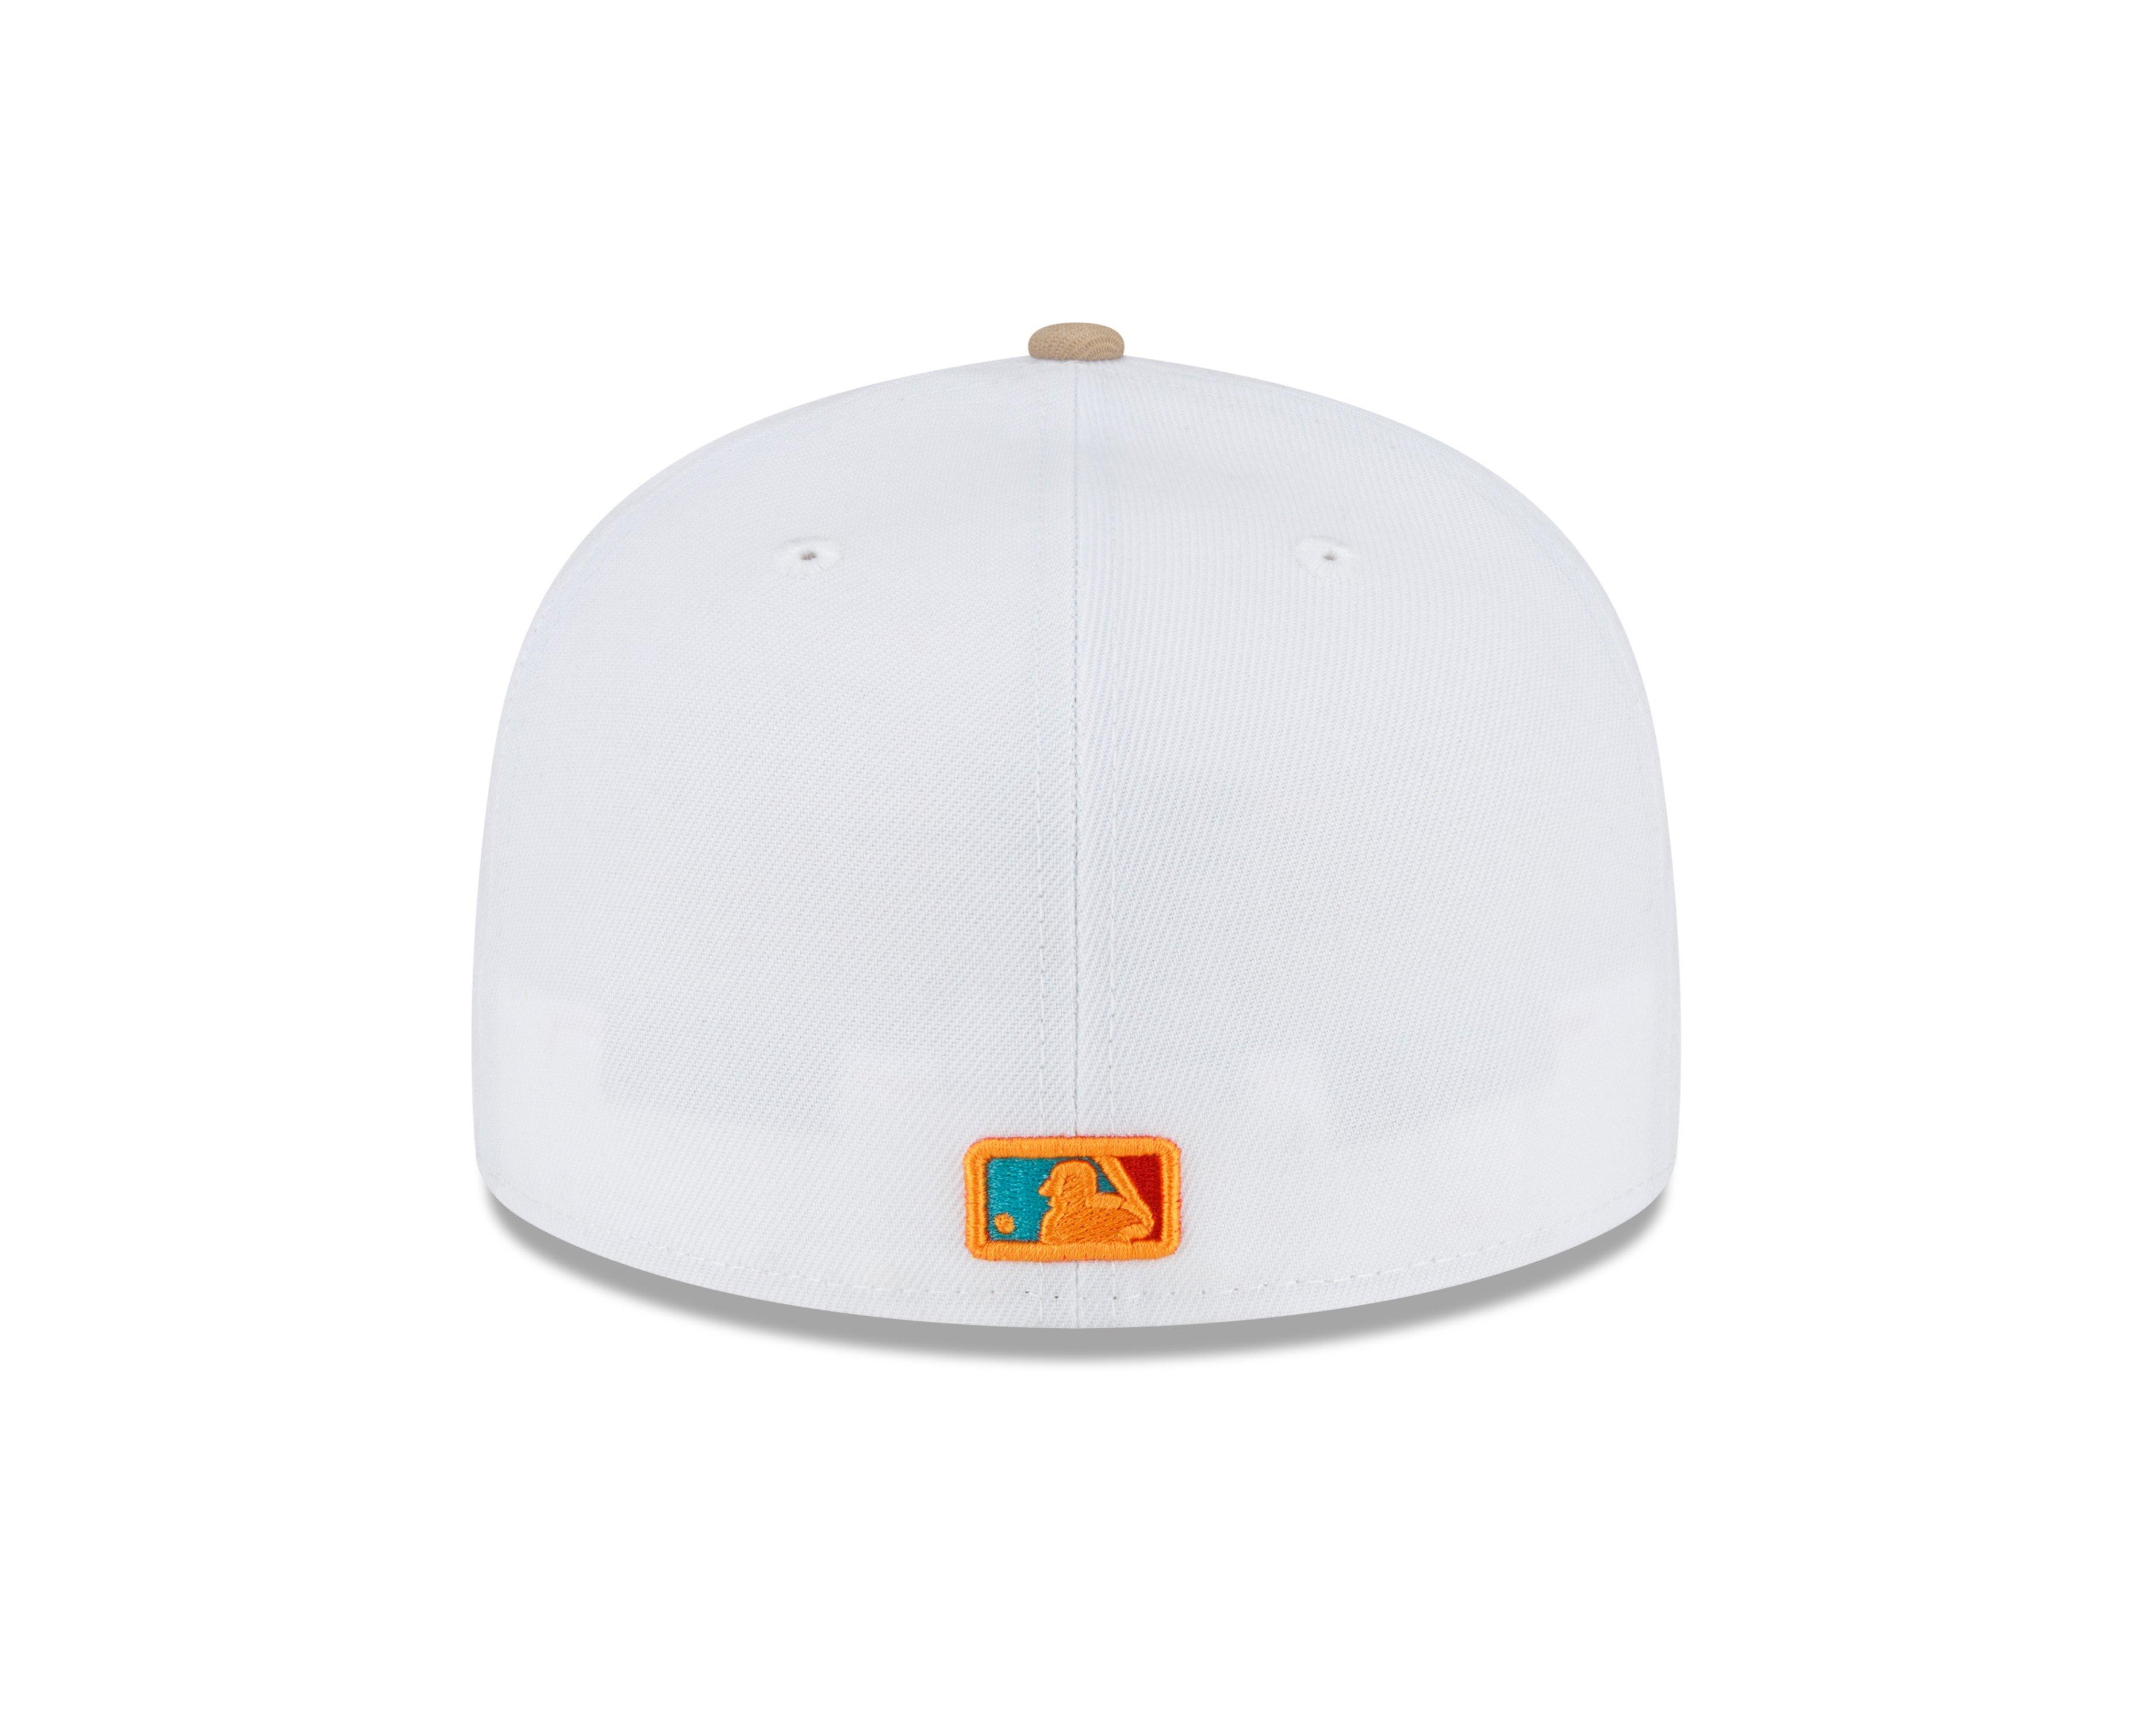 Men's Houston Astros '47 Charcoal/White Spring Training Sun Dog Trucker  Snapback Hat